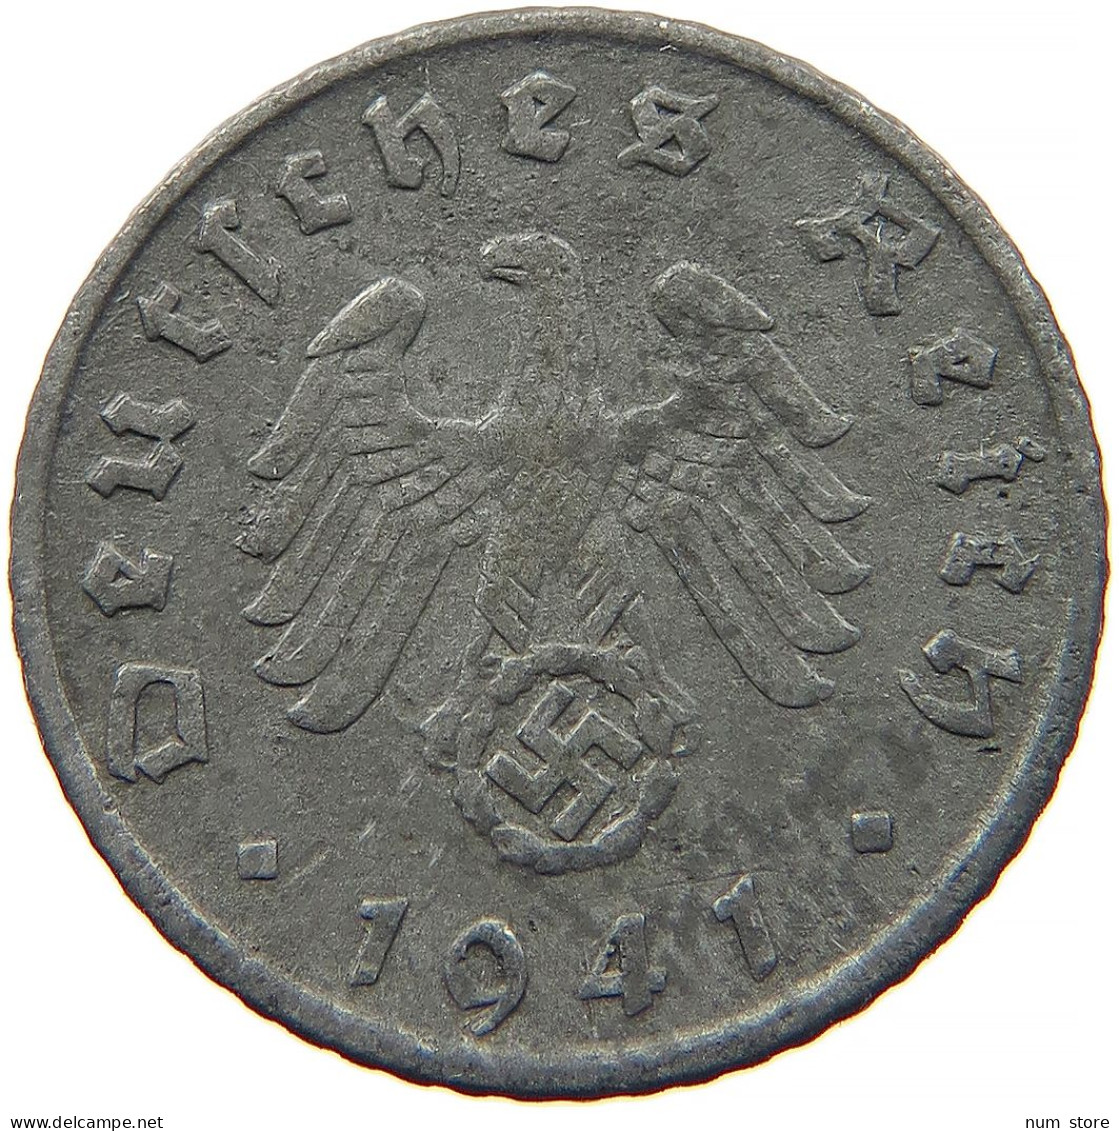 GERMANY 5 REICHSPFENNIG 1941 G #s091 0939 - 5 Reichspfennig